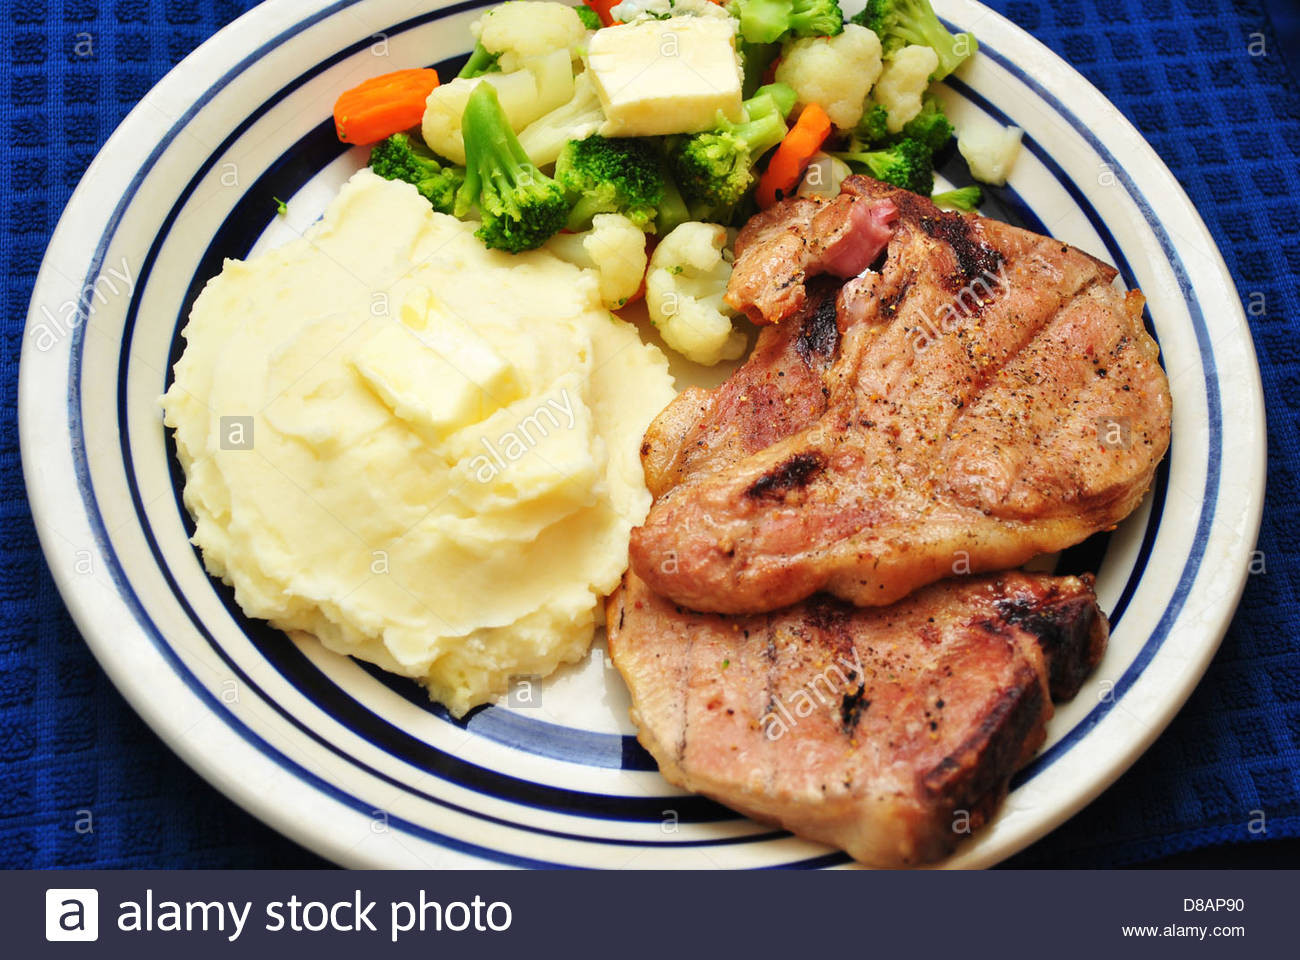 Sides For Pork Chops
 sides for grilled steak dinner